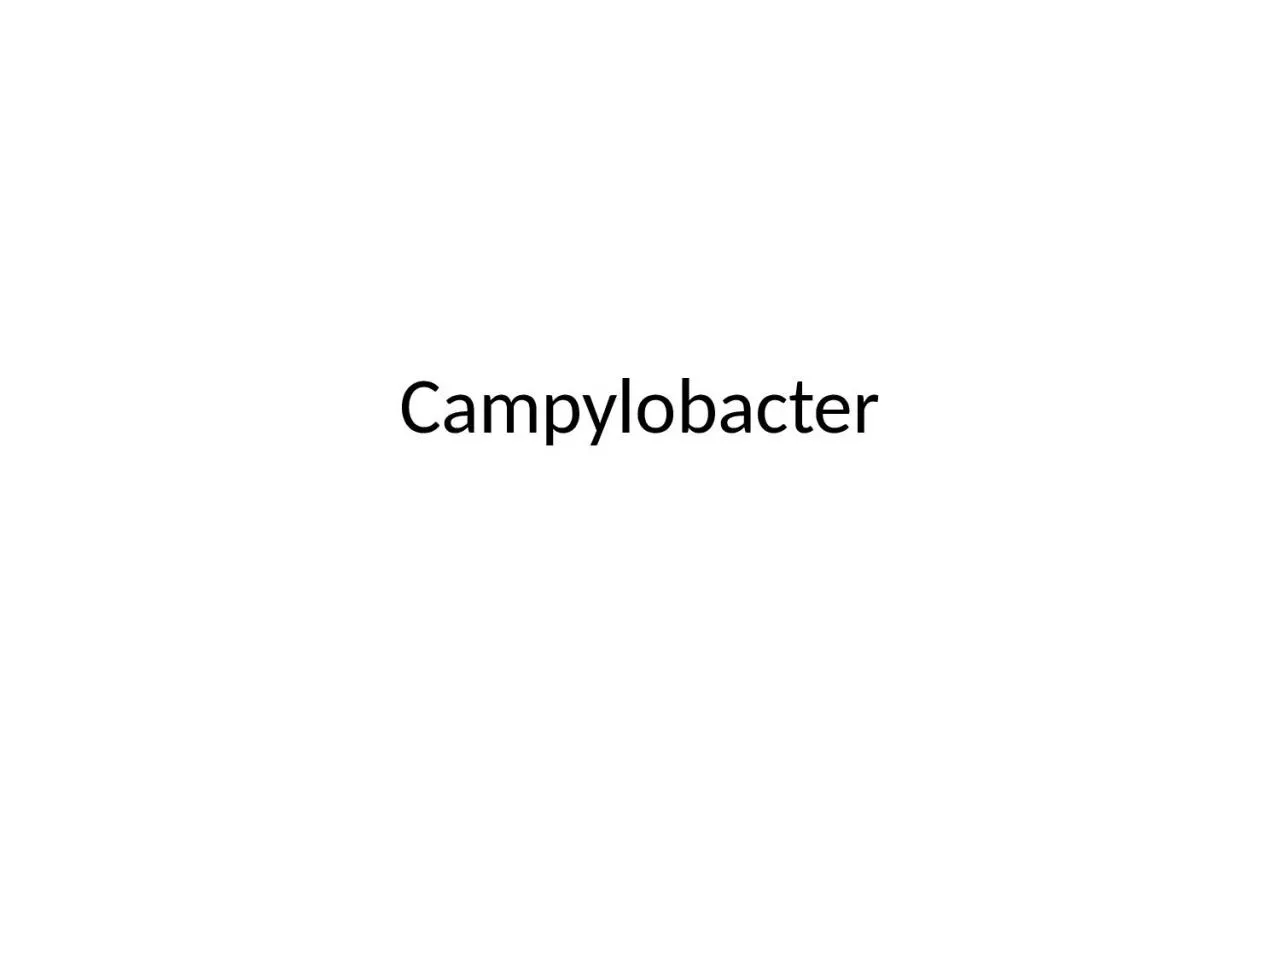 Campylobacter Campylobacter